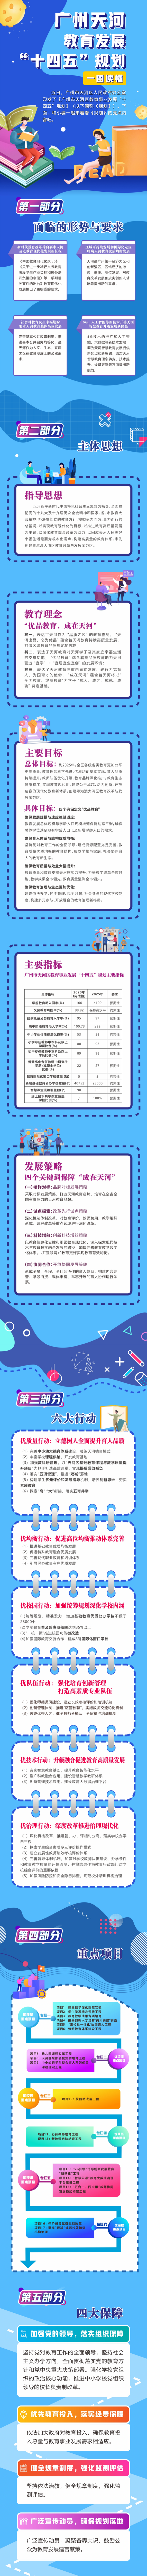 关于广州市天河区教育事业发展“十四五”规划政策解读.jpg